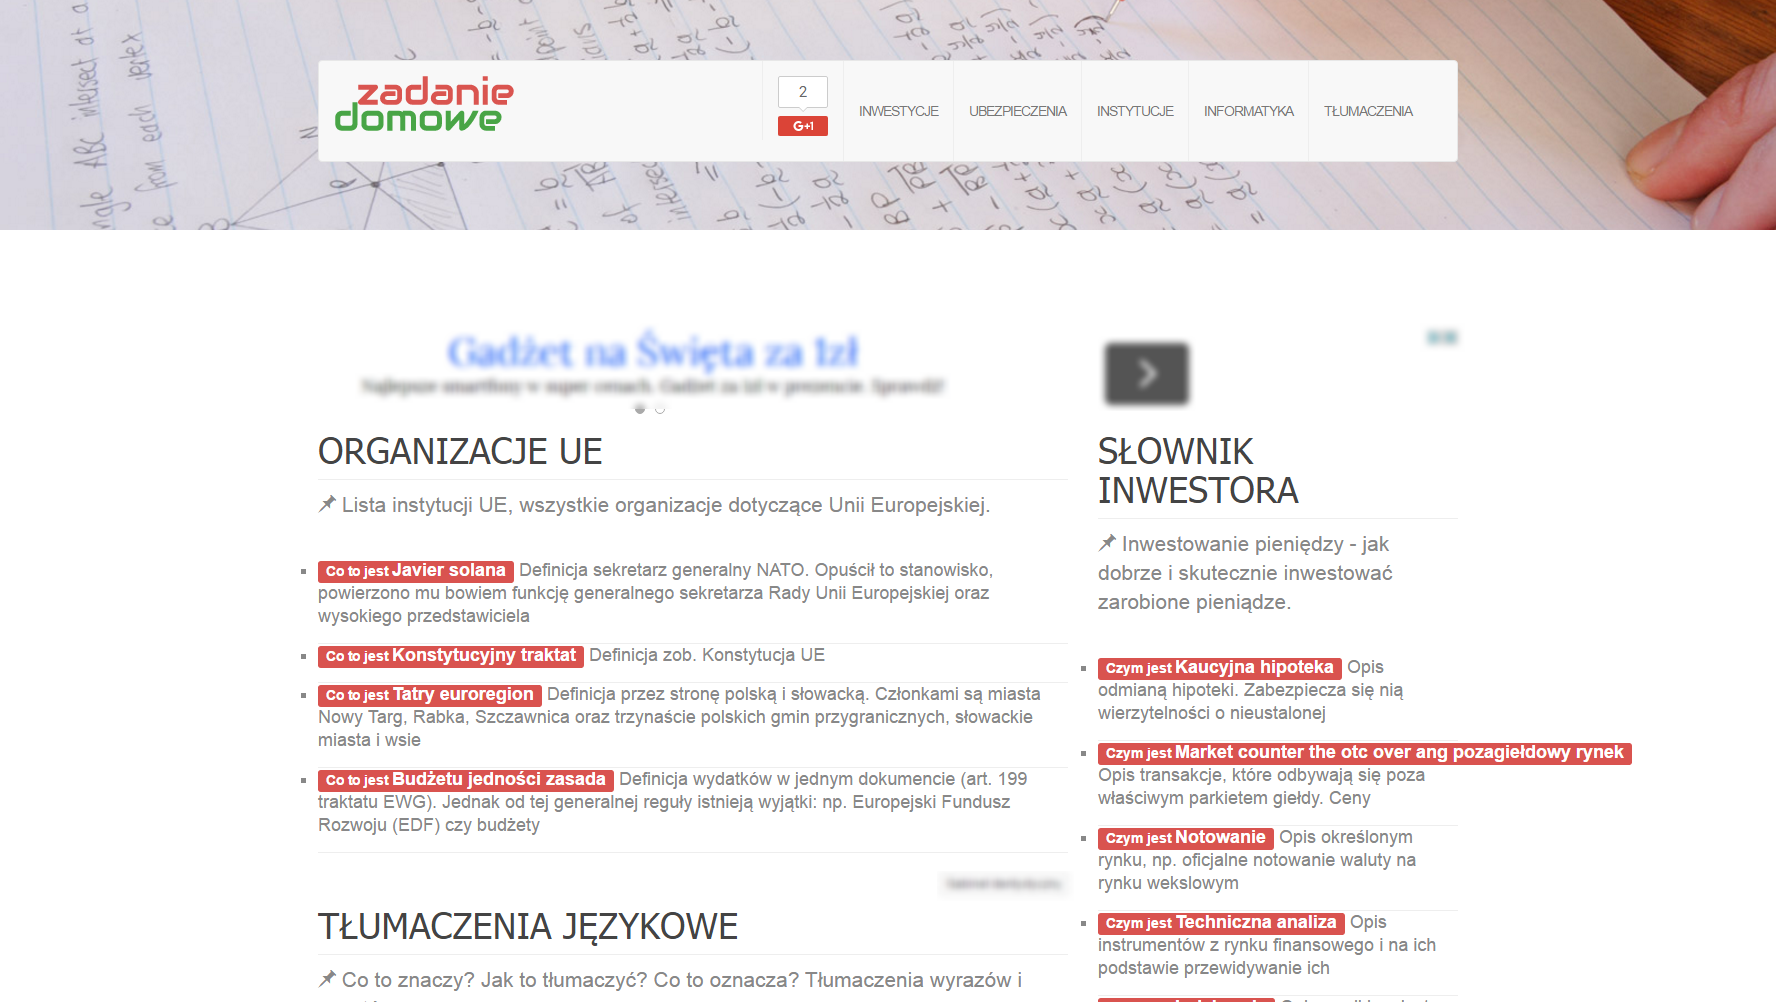 Proyecto Zadanie-Domowe.com